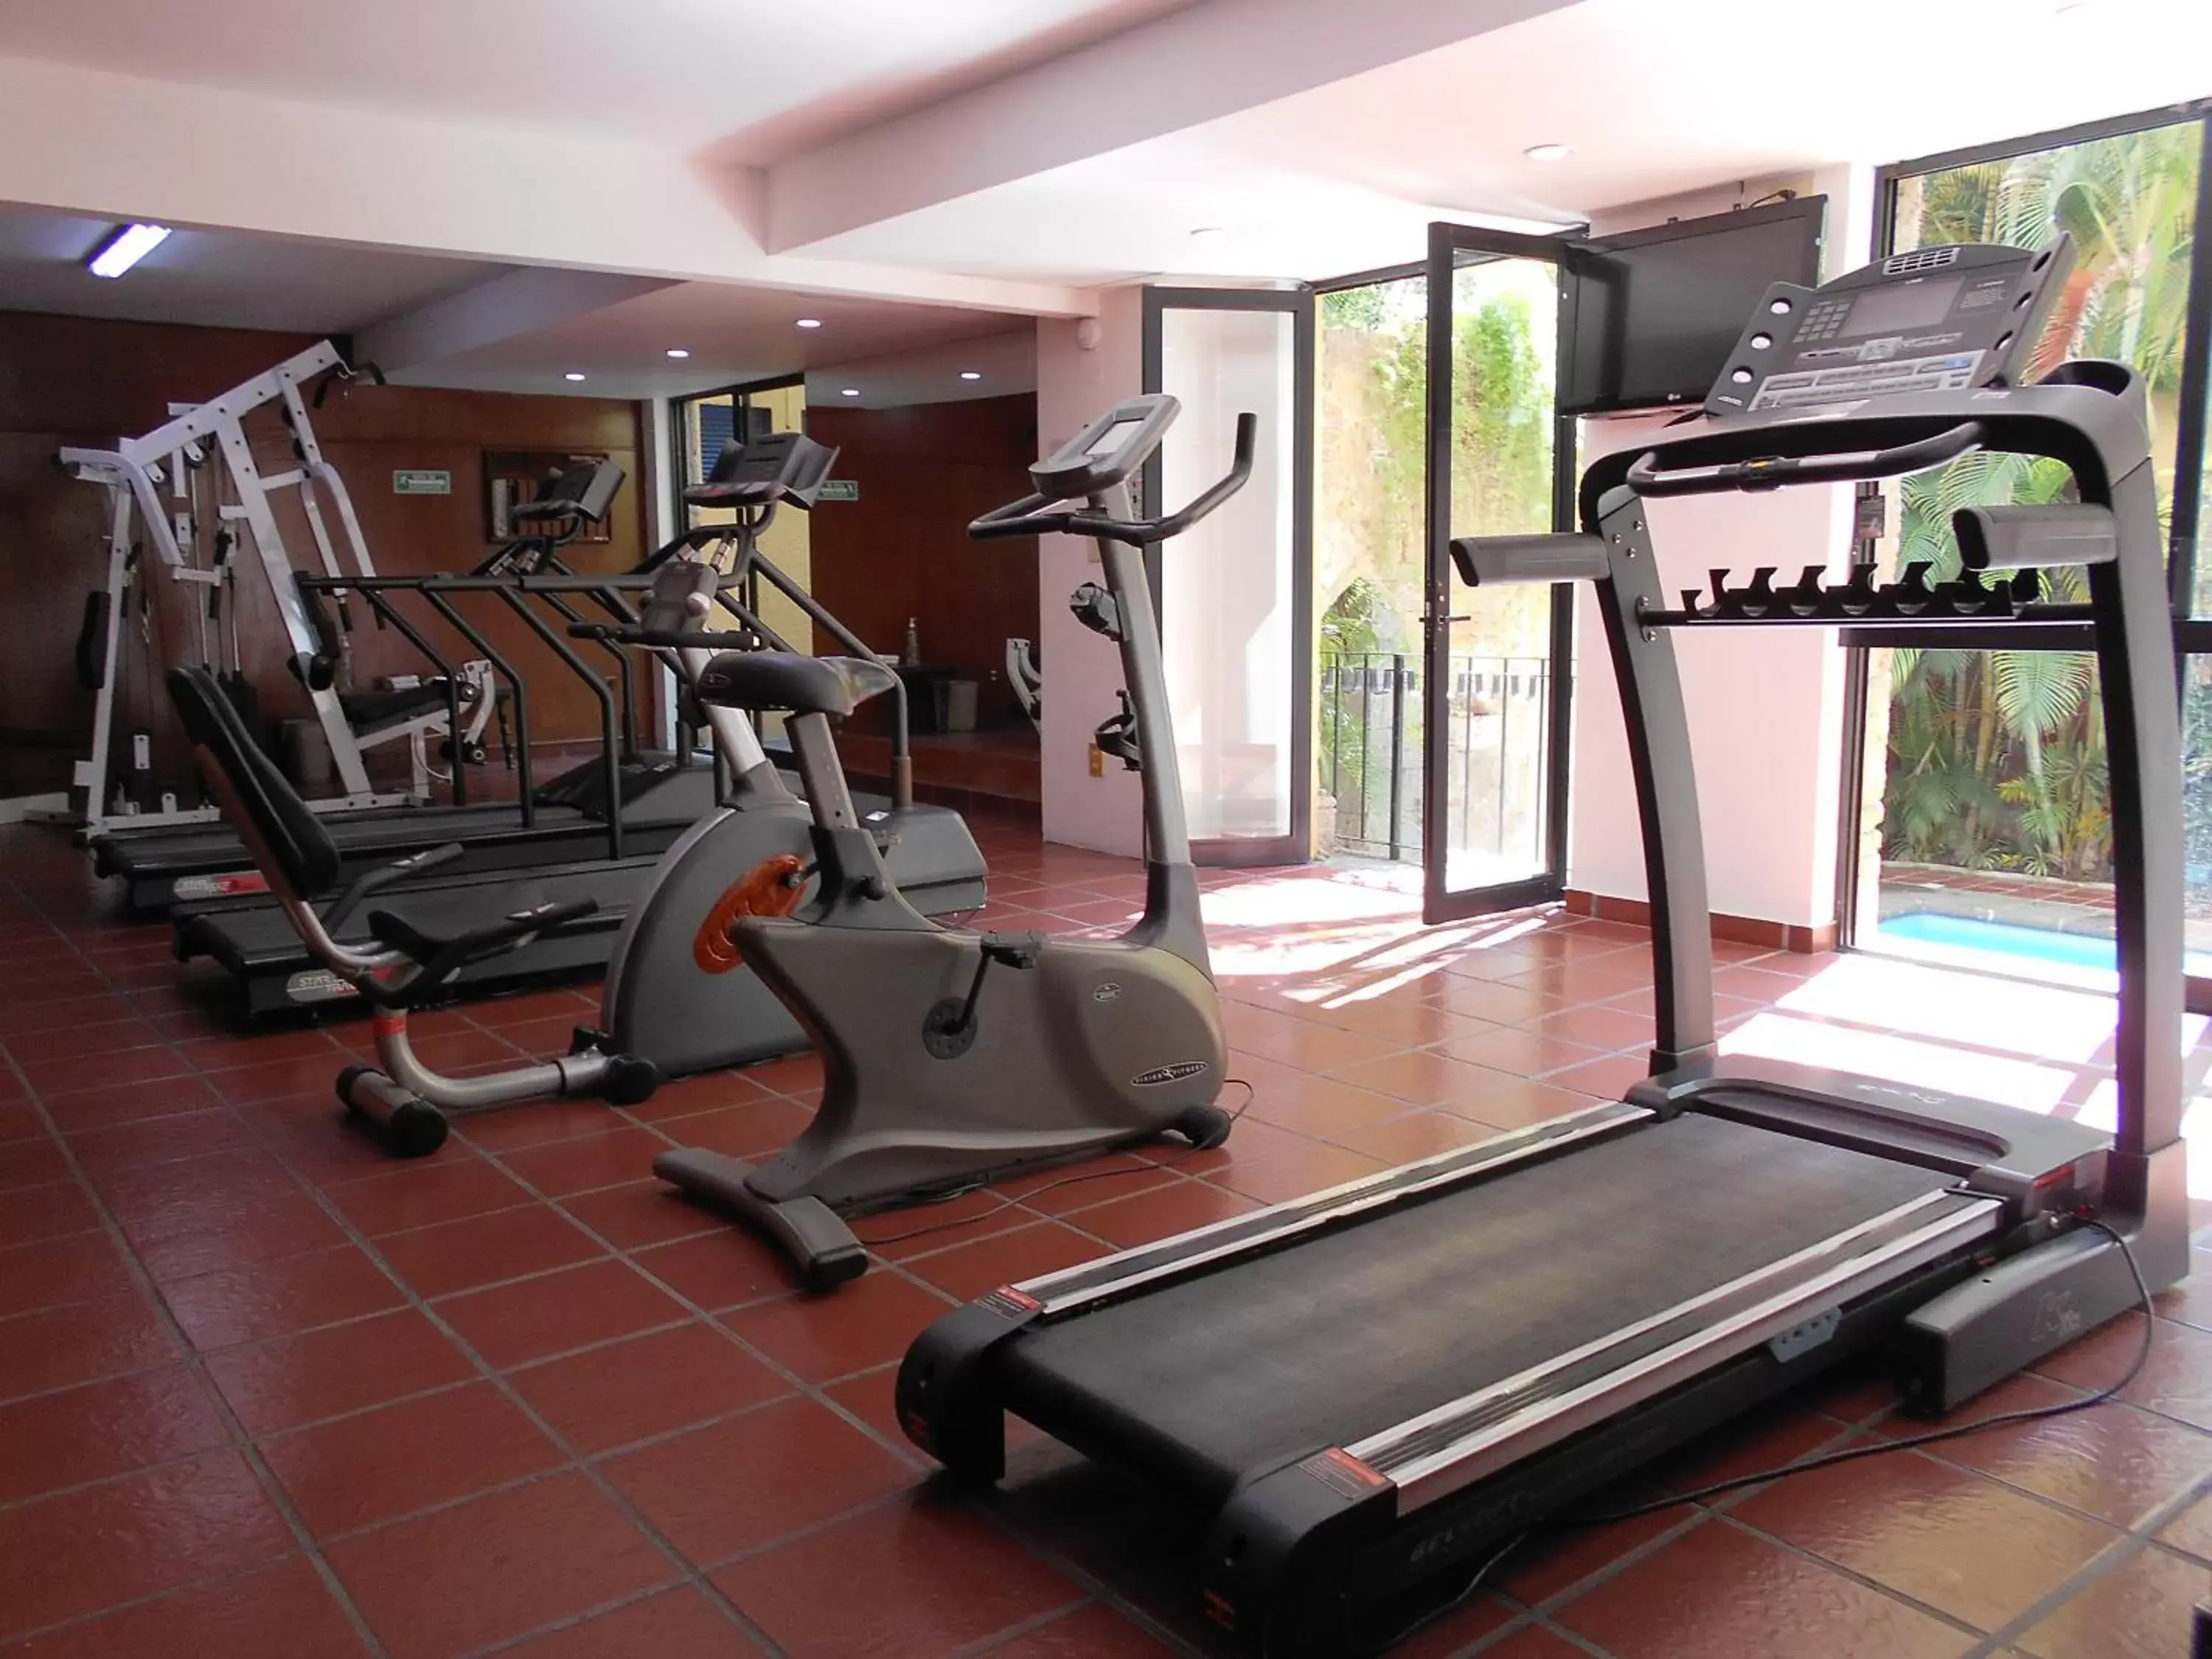 Fitness centre/facilities, Fitness Center/Facilities in Hotel de Mendoza